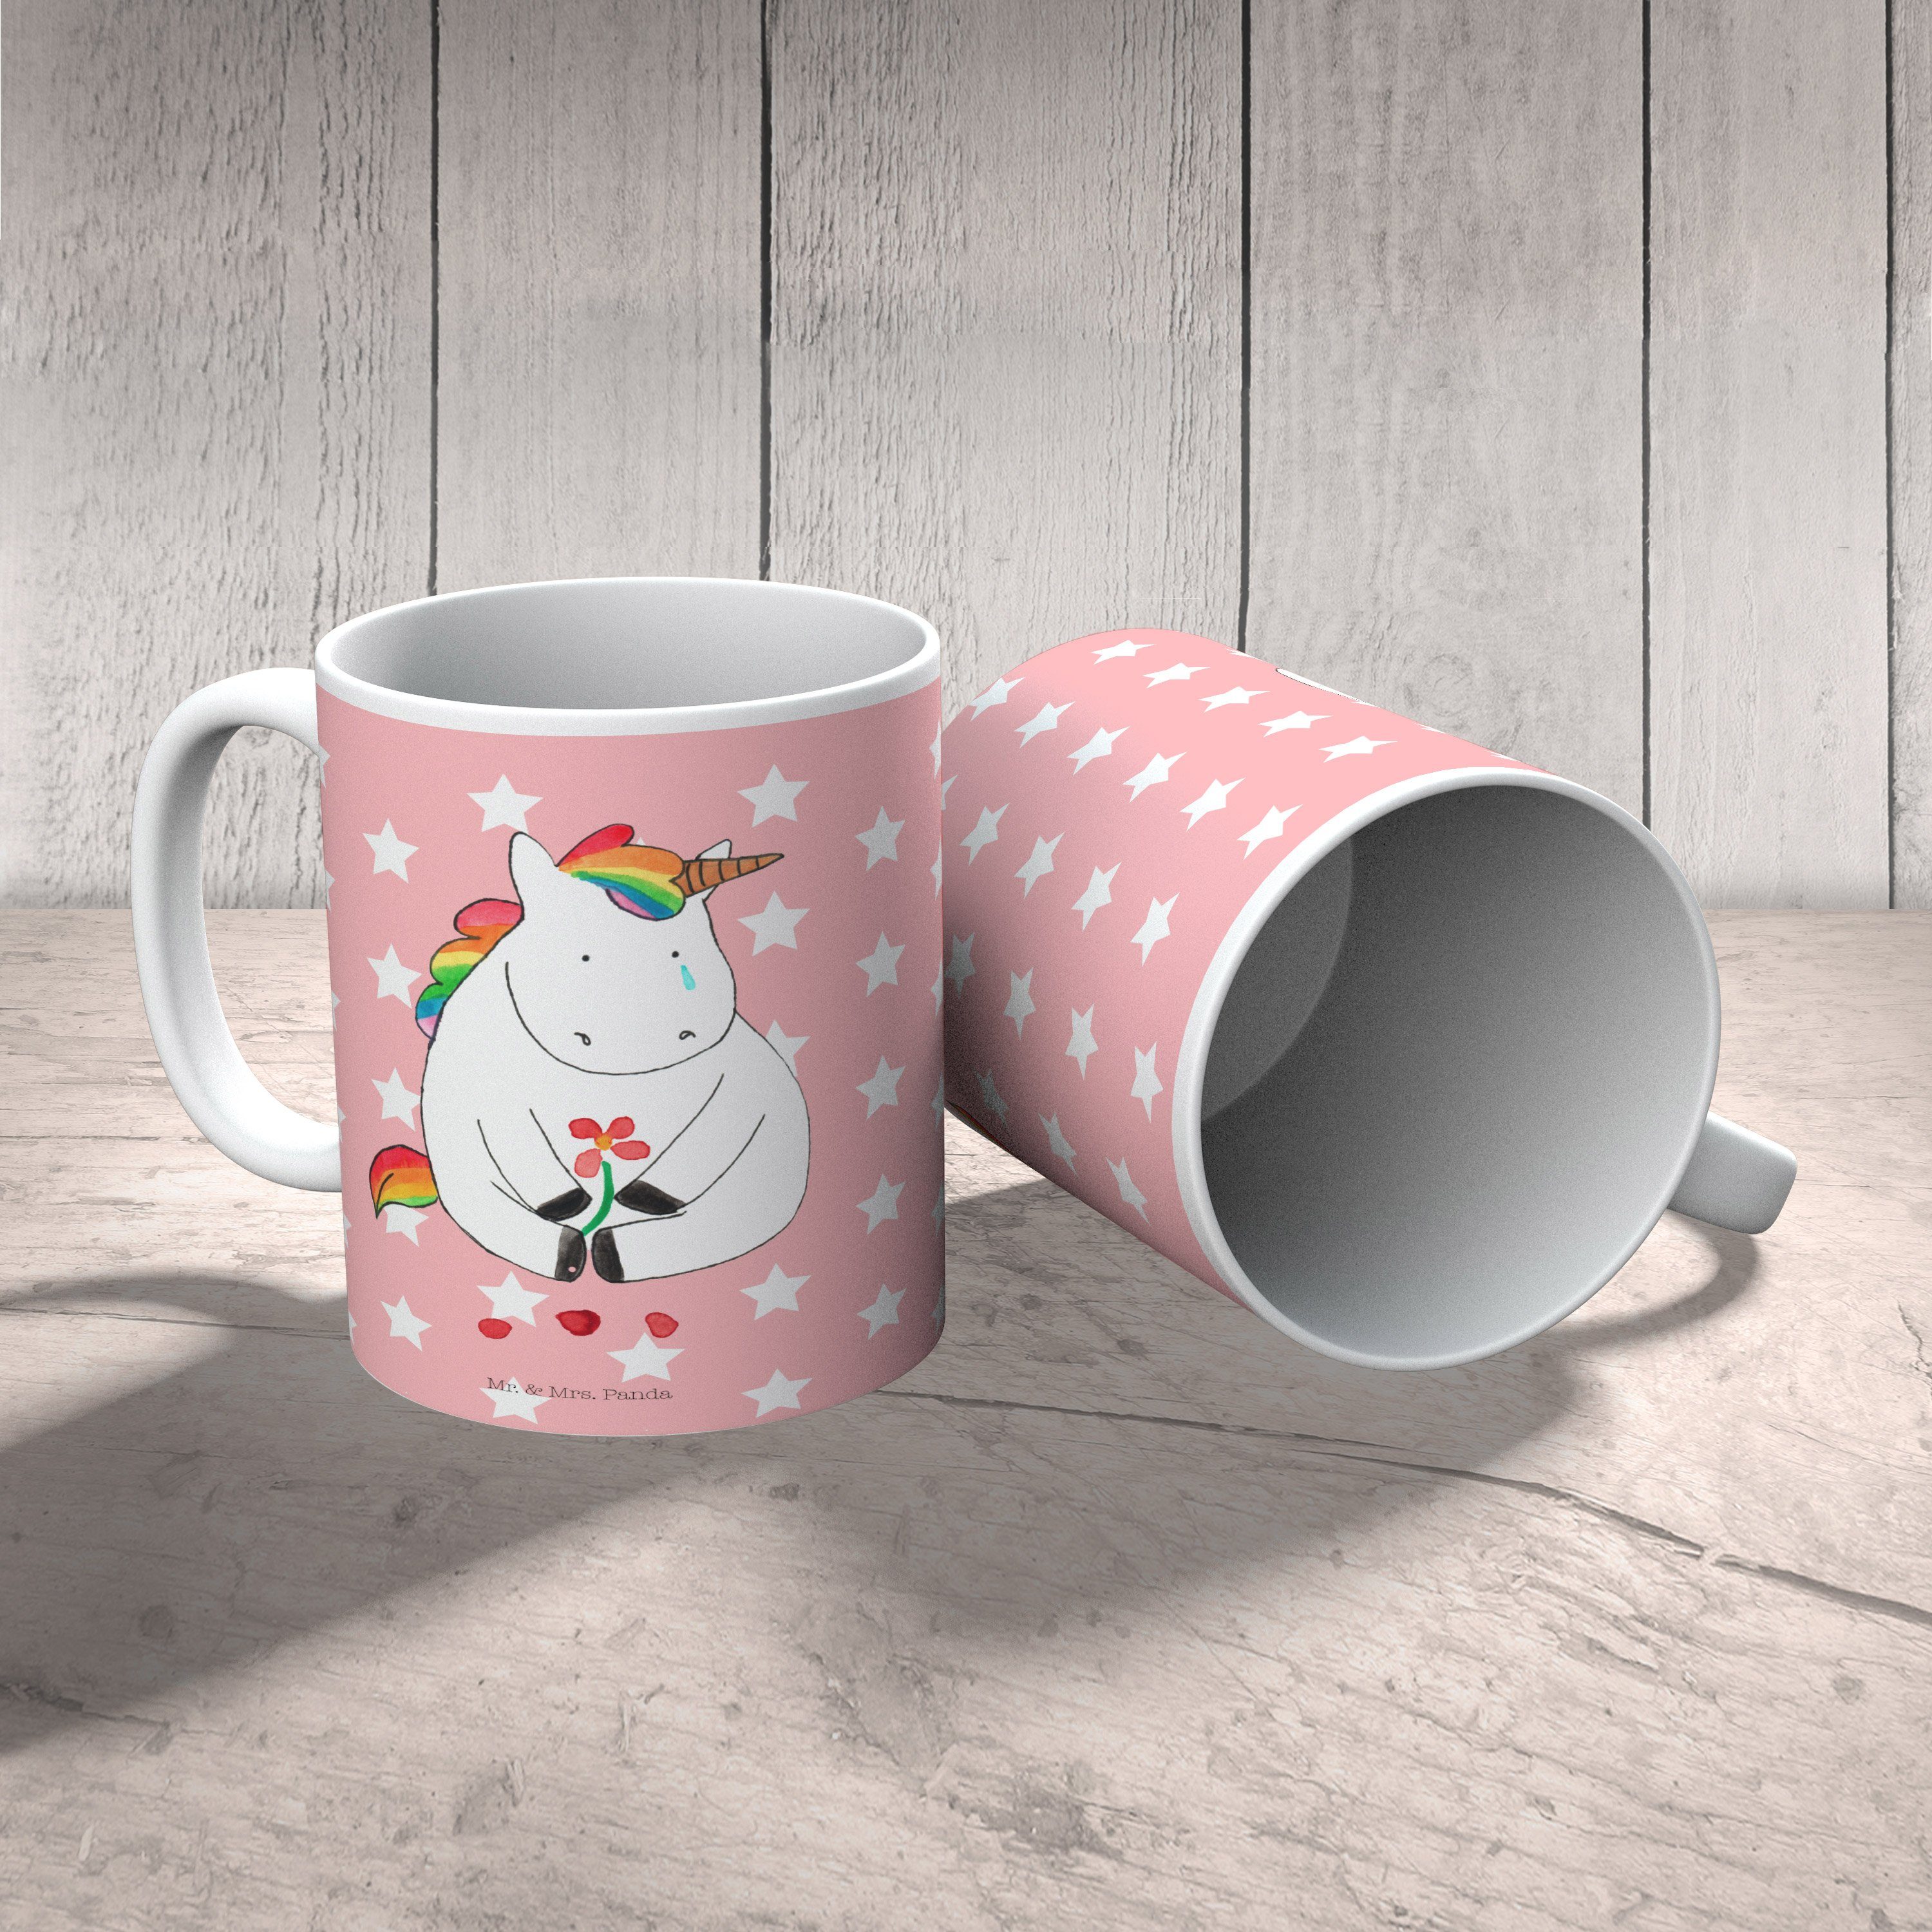 Kaffeetasse, Geschenk, Rot Traurig Pastell Kunststoff Einhorn, Mr. Kinderbecher & Tasse, Einhorn Panda - - Mrs.